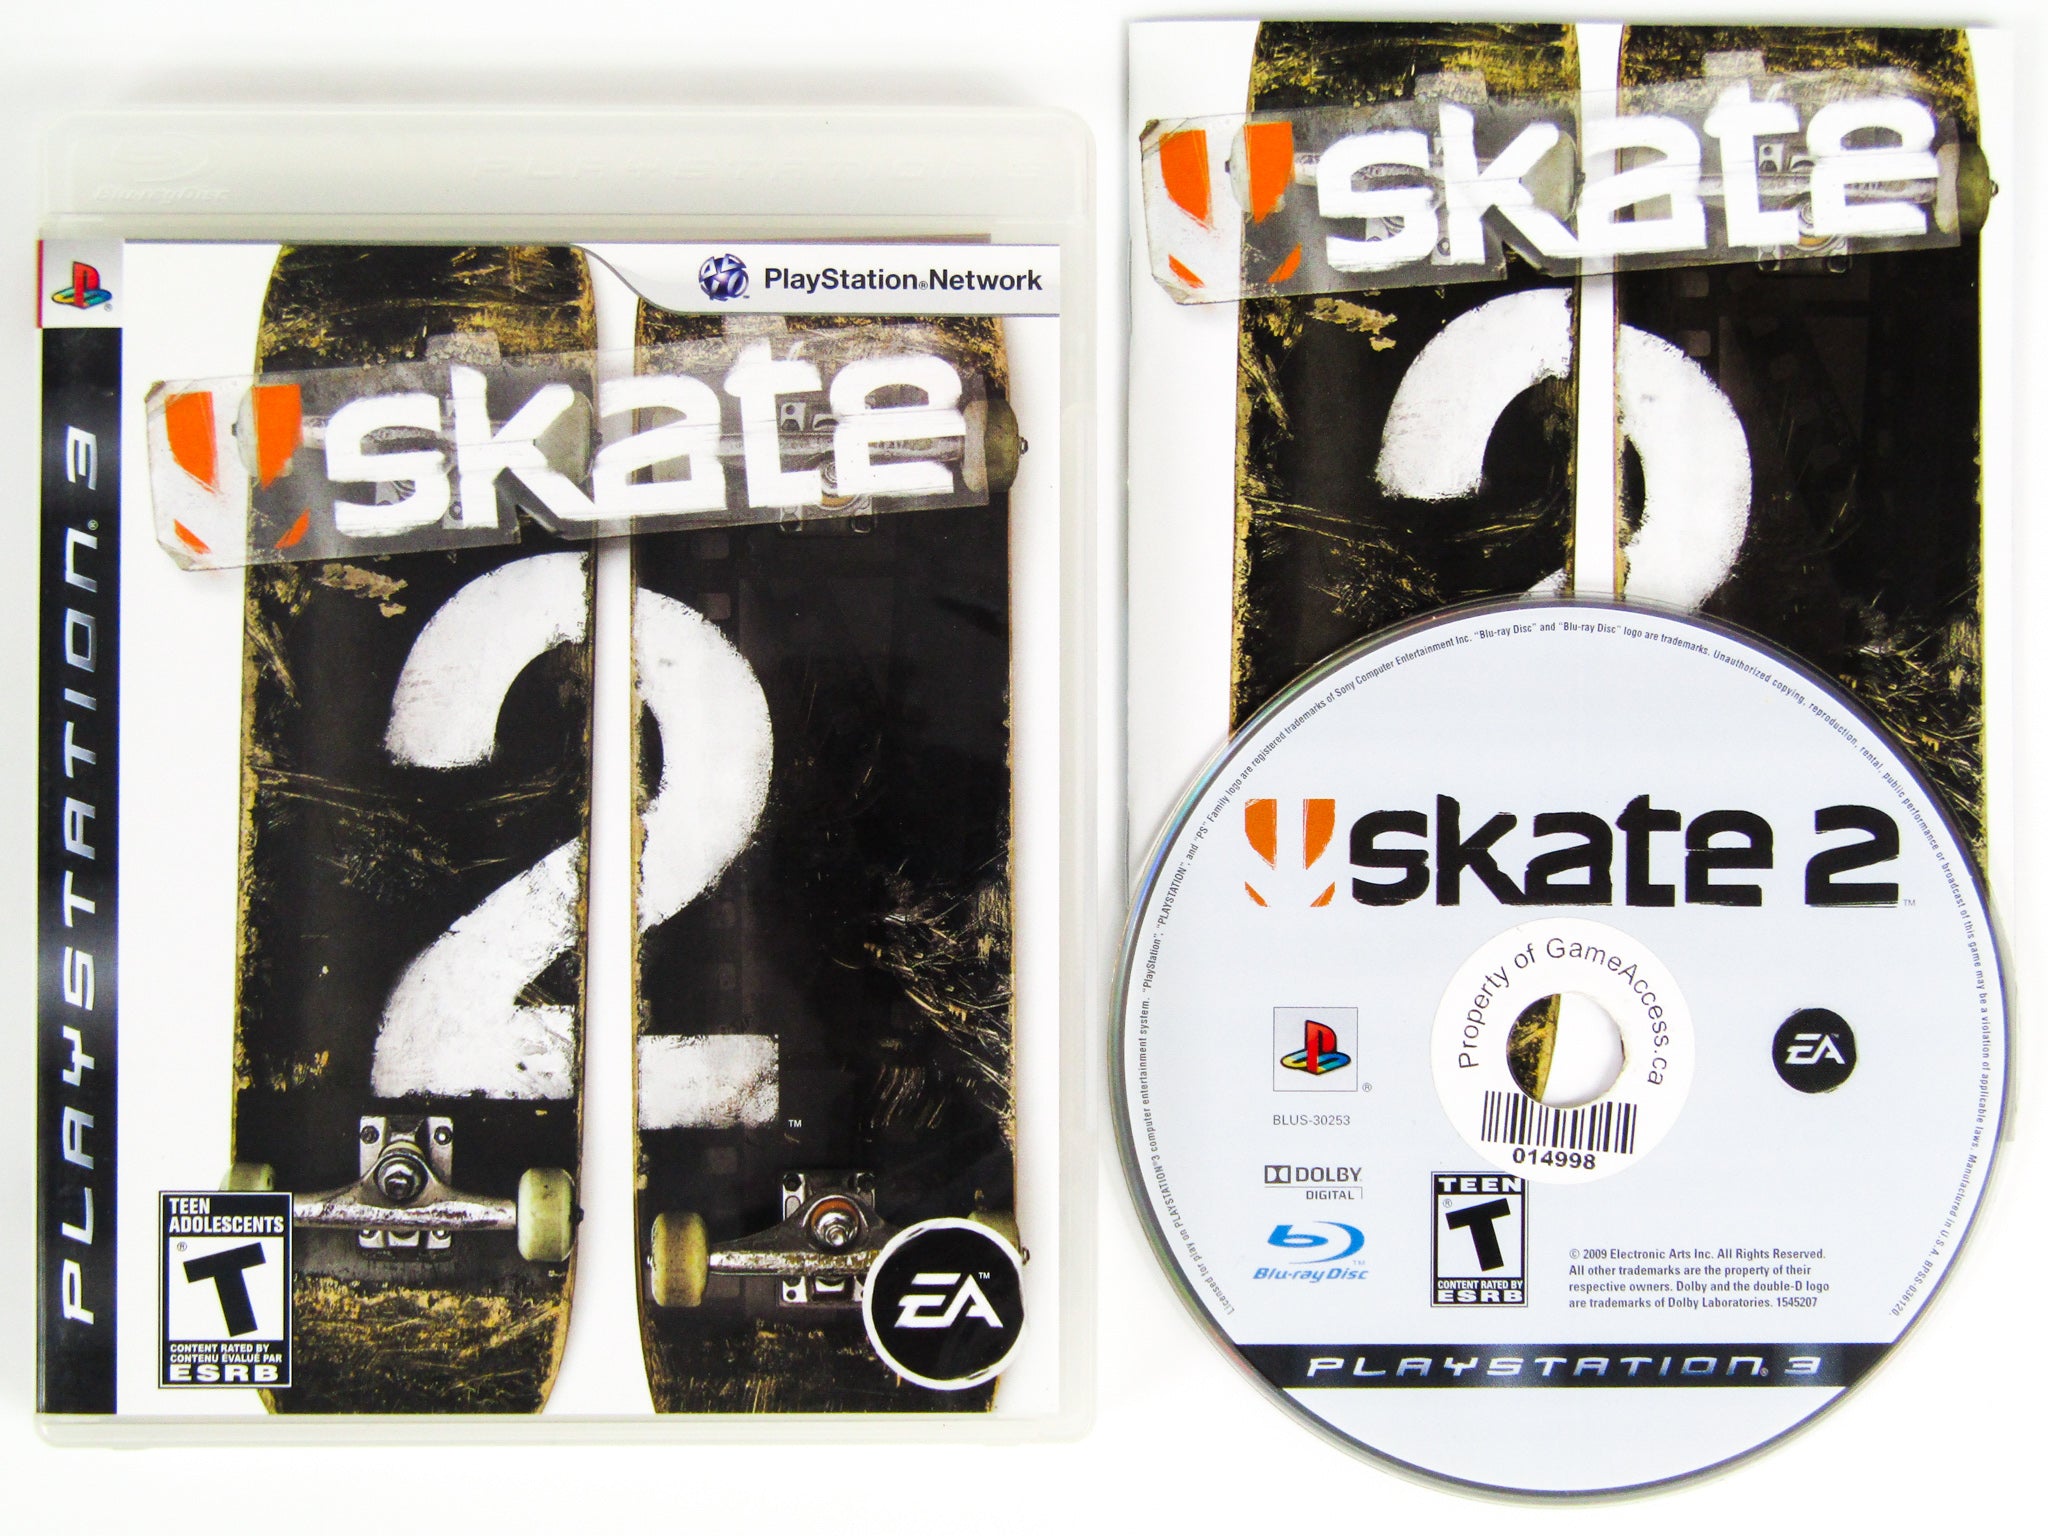 Skate 2 PKG PS3 